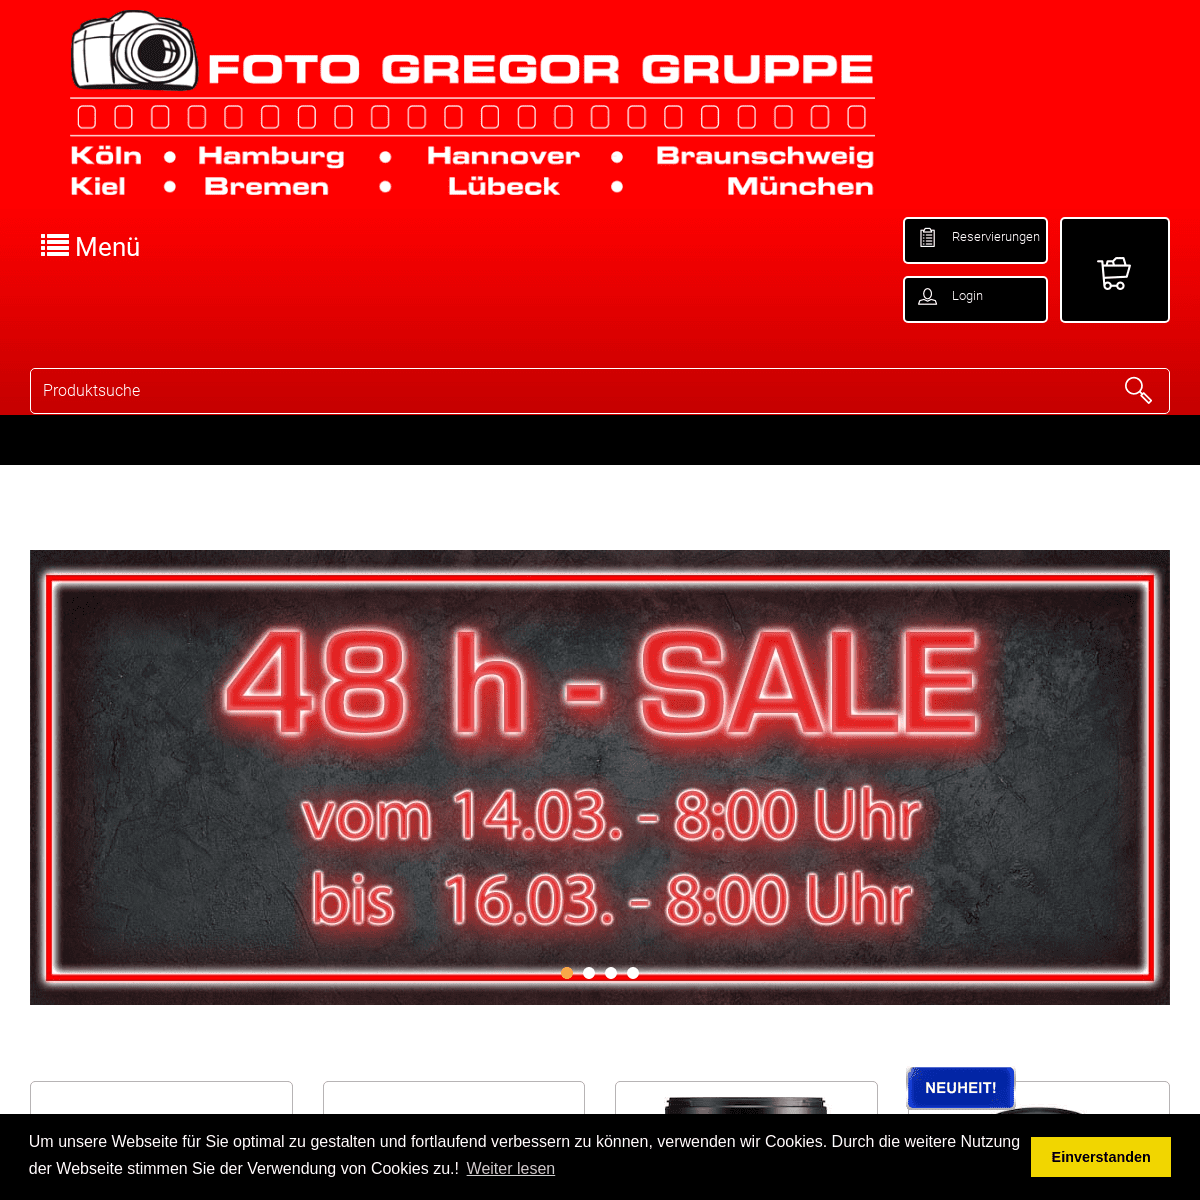 A complete backup of foto-gregor-gruppe.de